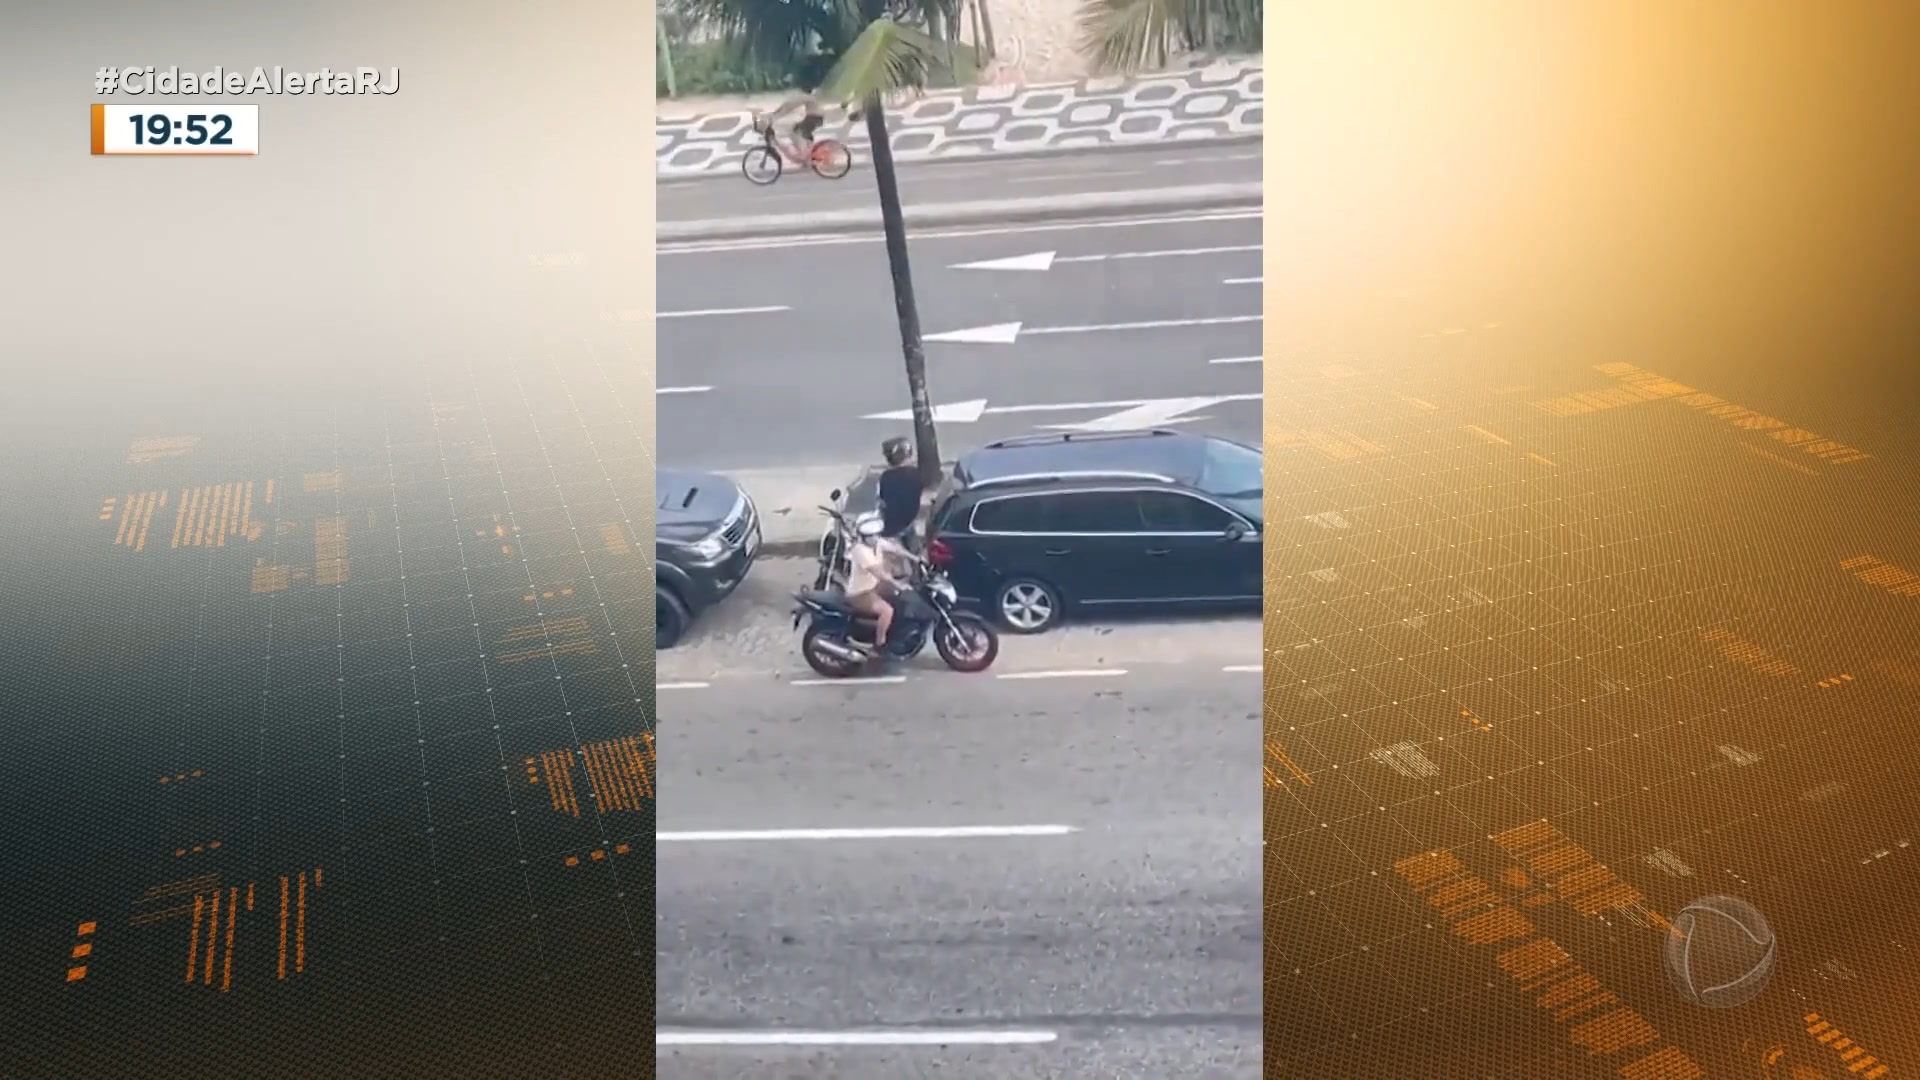 Vídeo: Casal flagrado ao tentar furtar moto foge após gritos de 'pega ladrão' no Rio